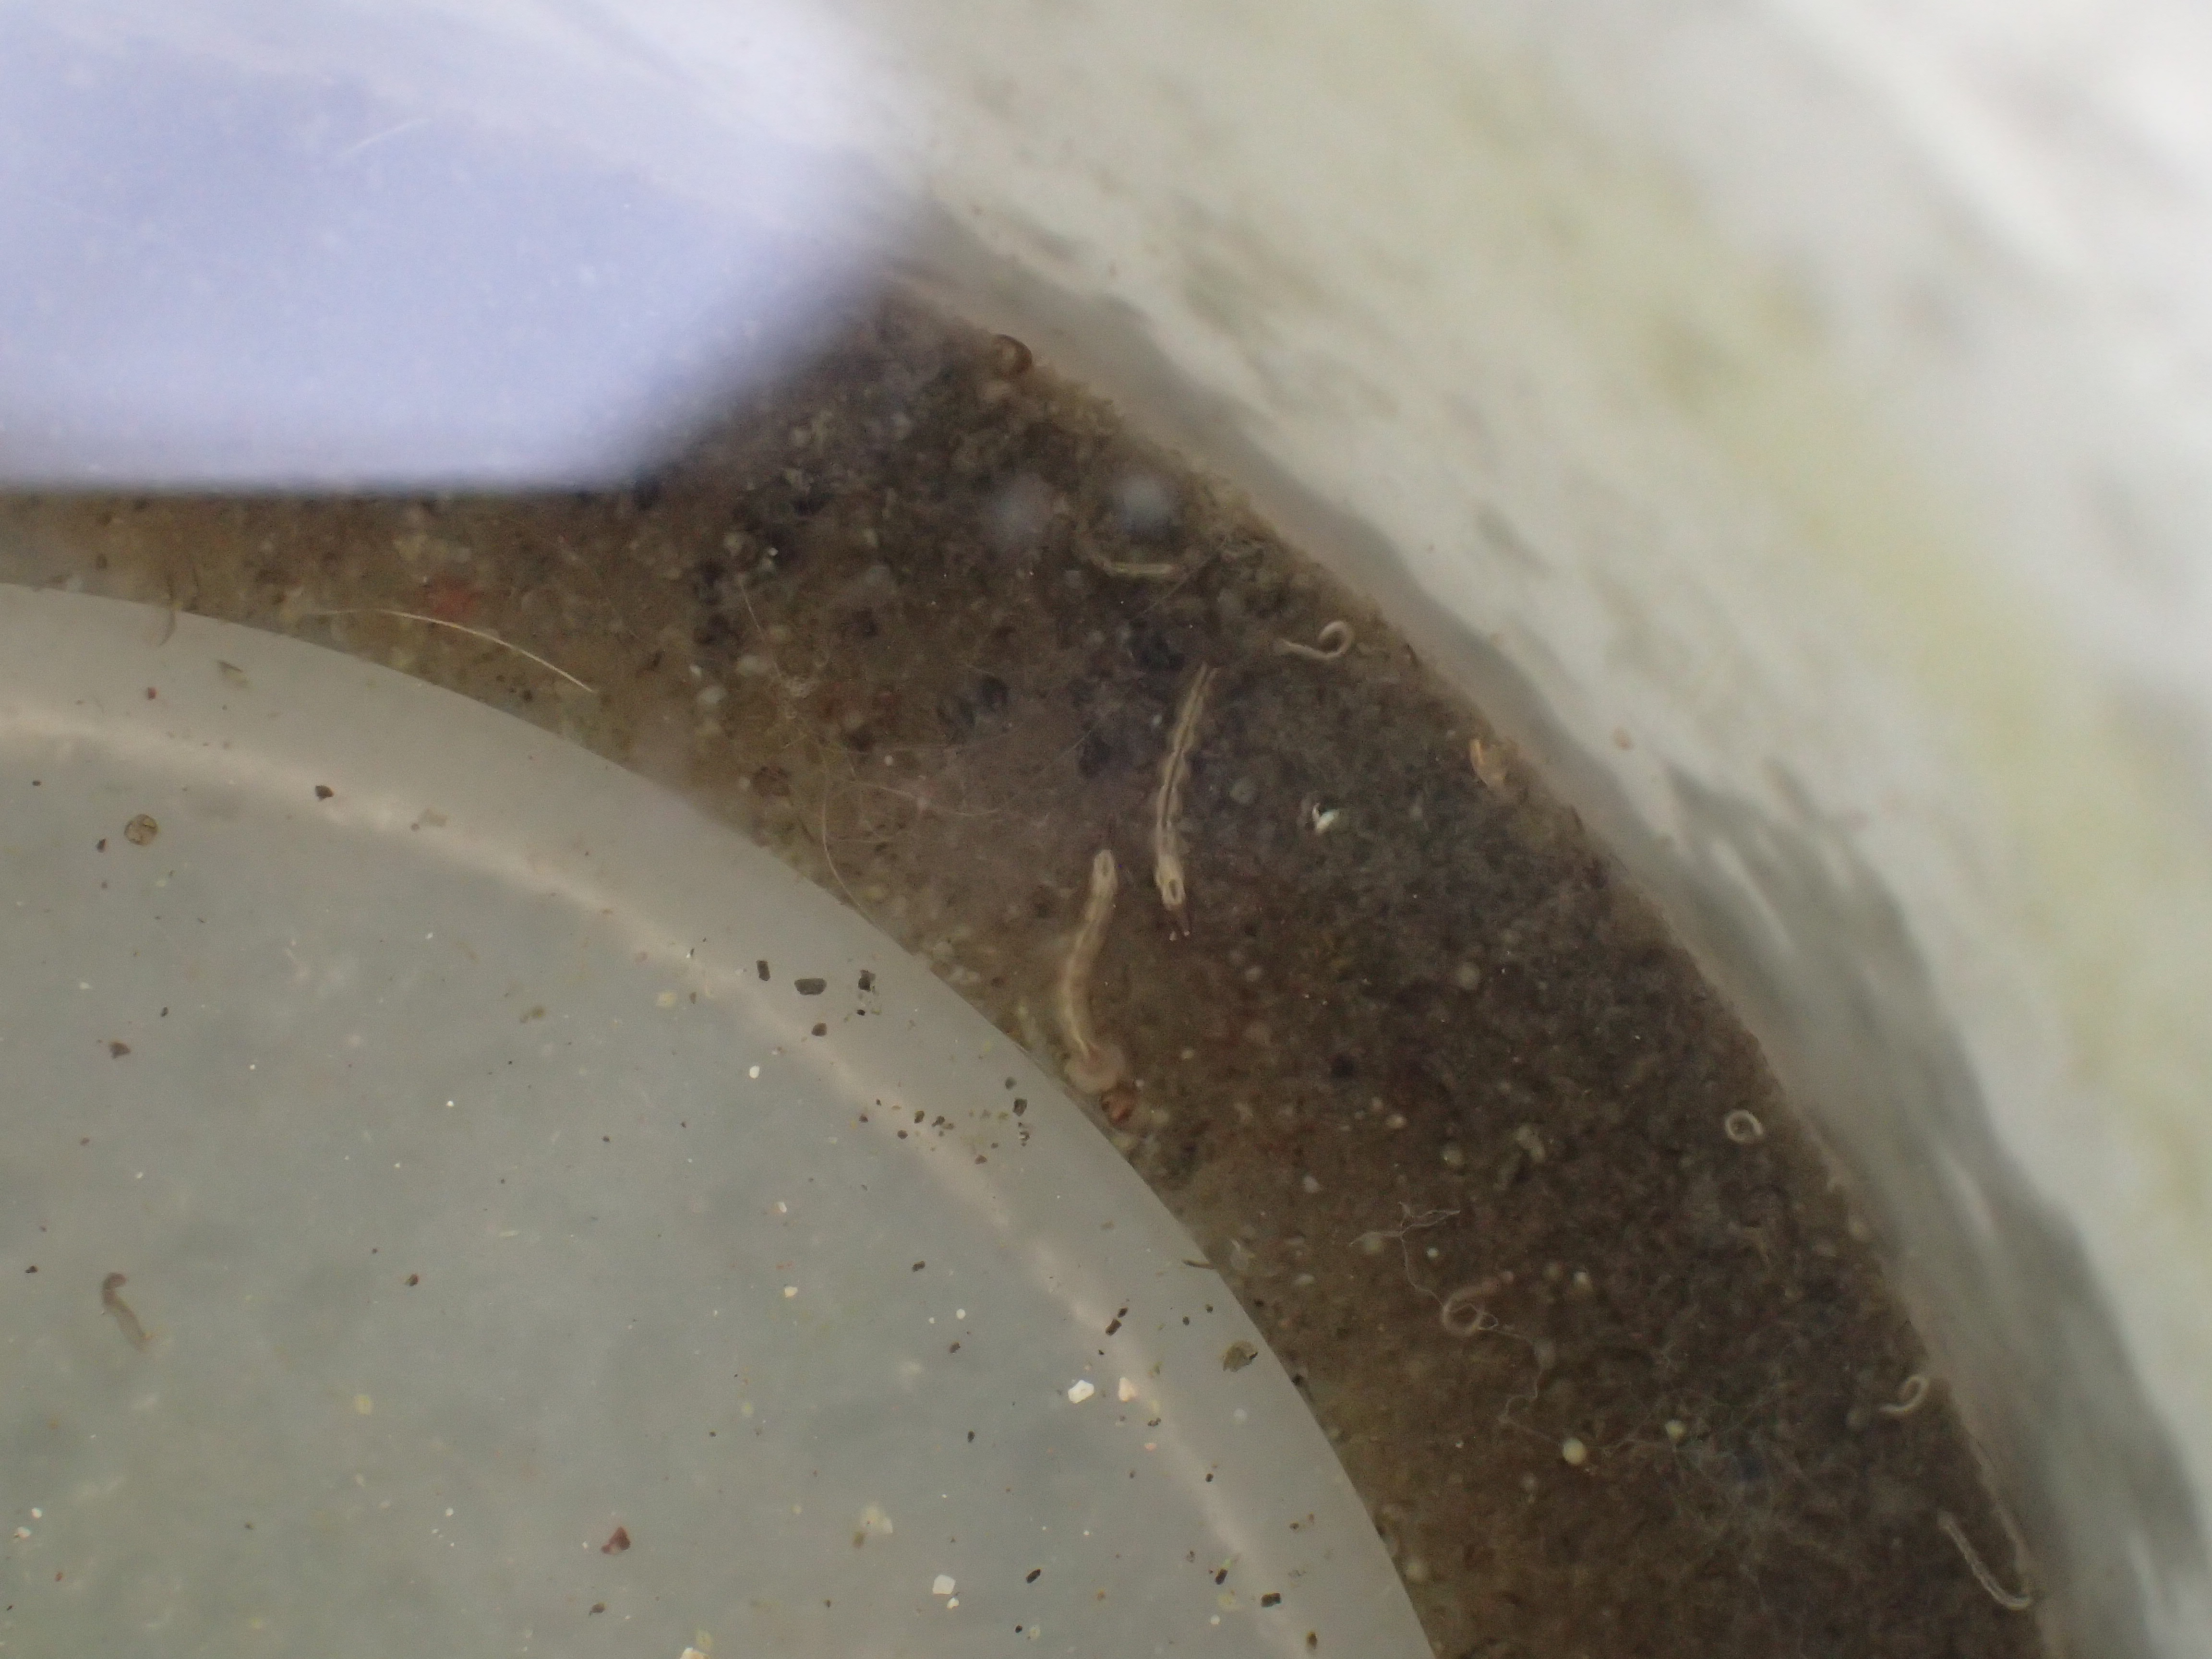 蚊とりん容器の底で泳ぐ害虫ボウフラの写真・画像